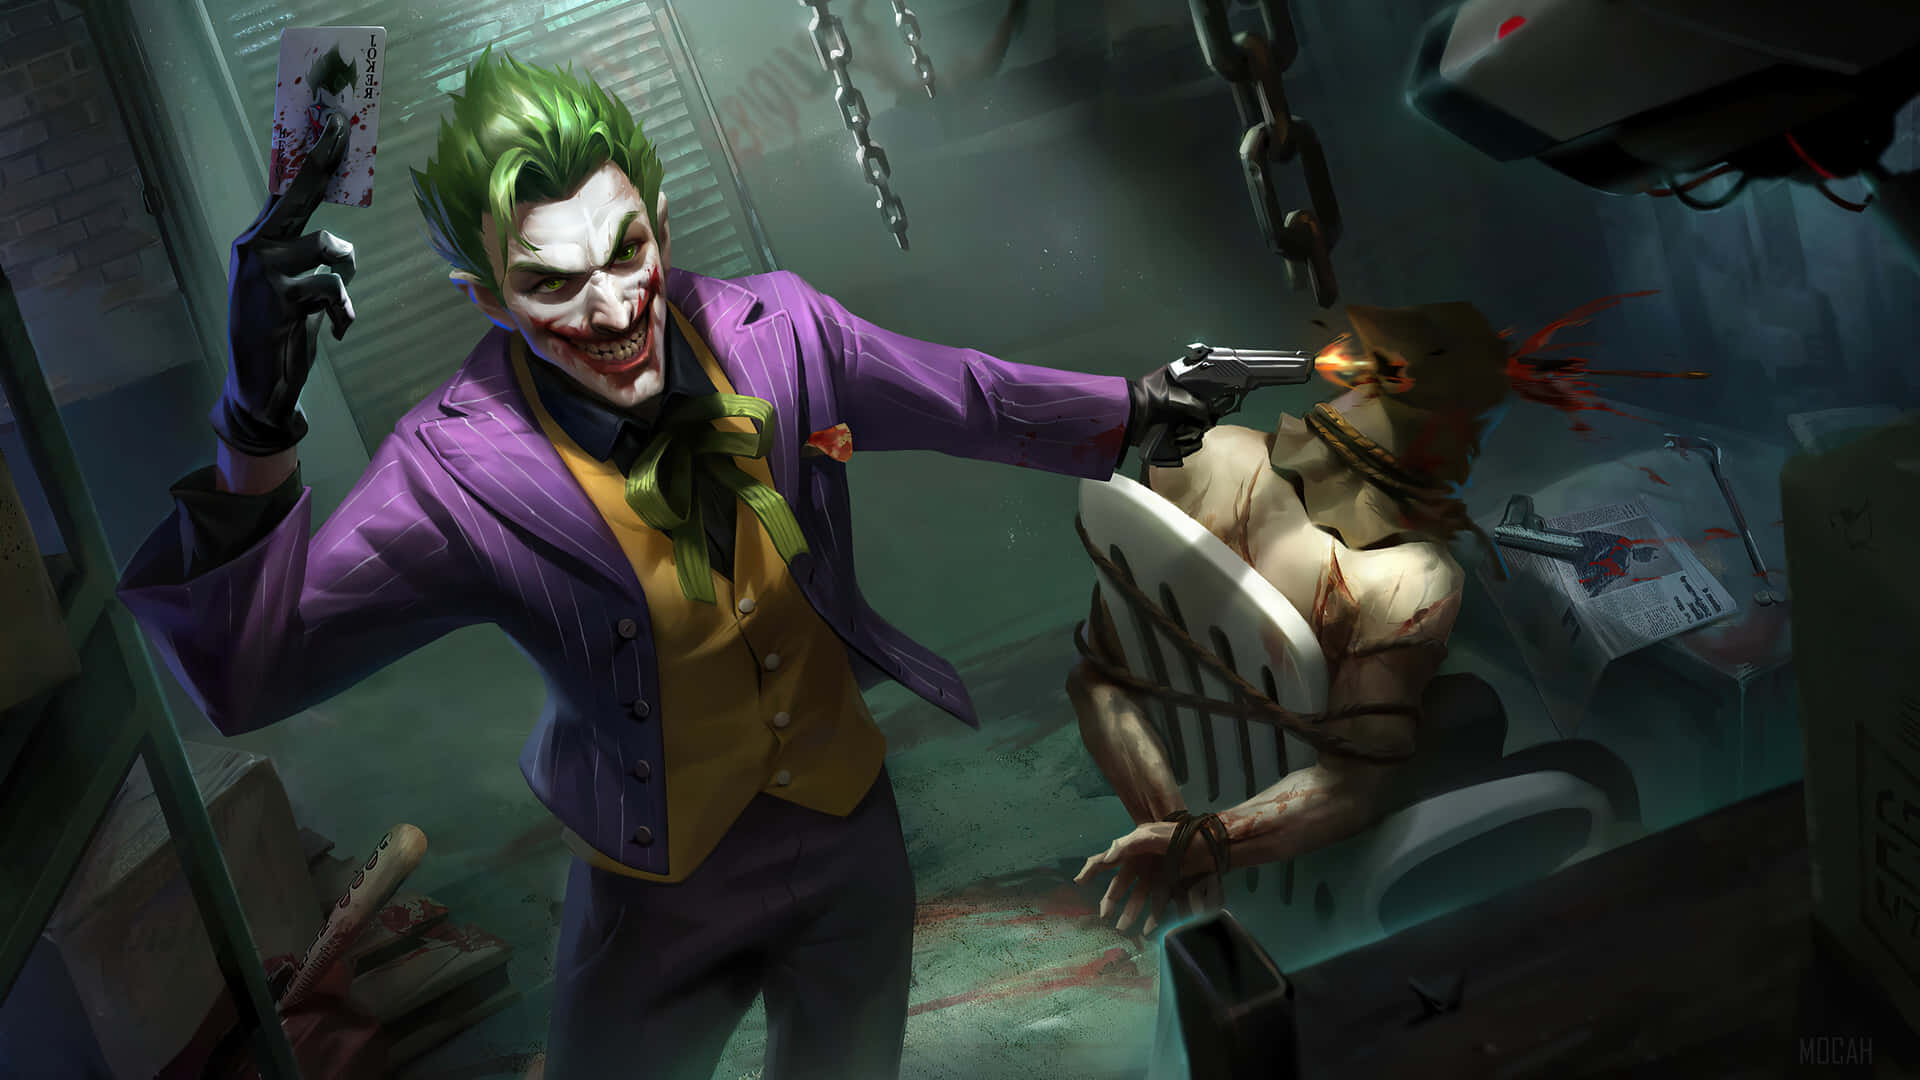 Joker i al sin herlighed. Wallpaper